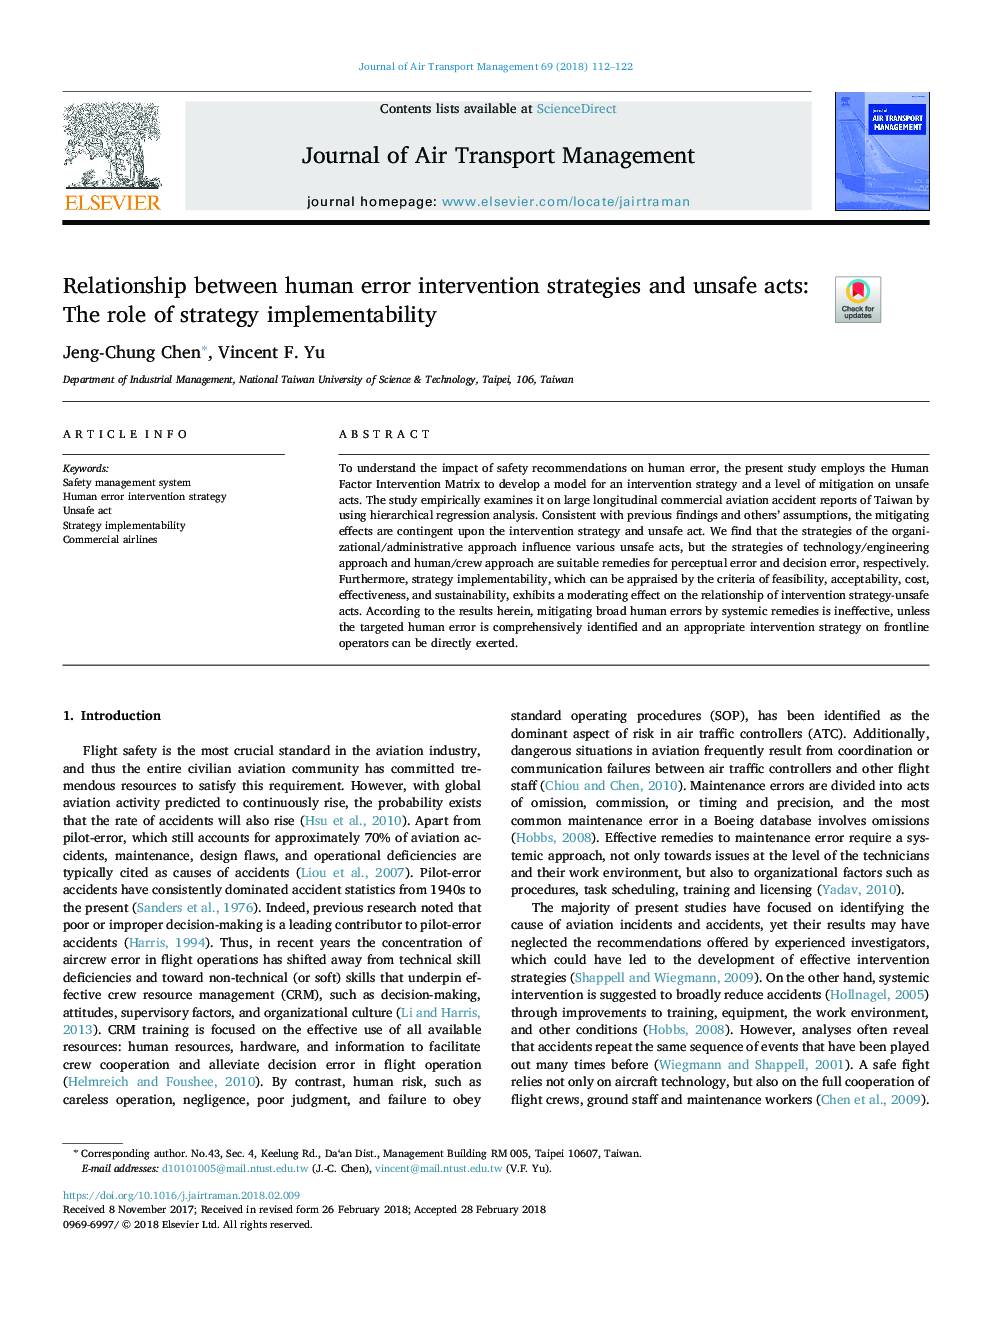 رابطه بین استراتژی های مداخله خطای انسانی و اقدامات ناامن: نقش پیاده سازی استراتژی 